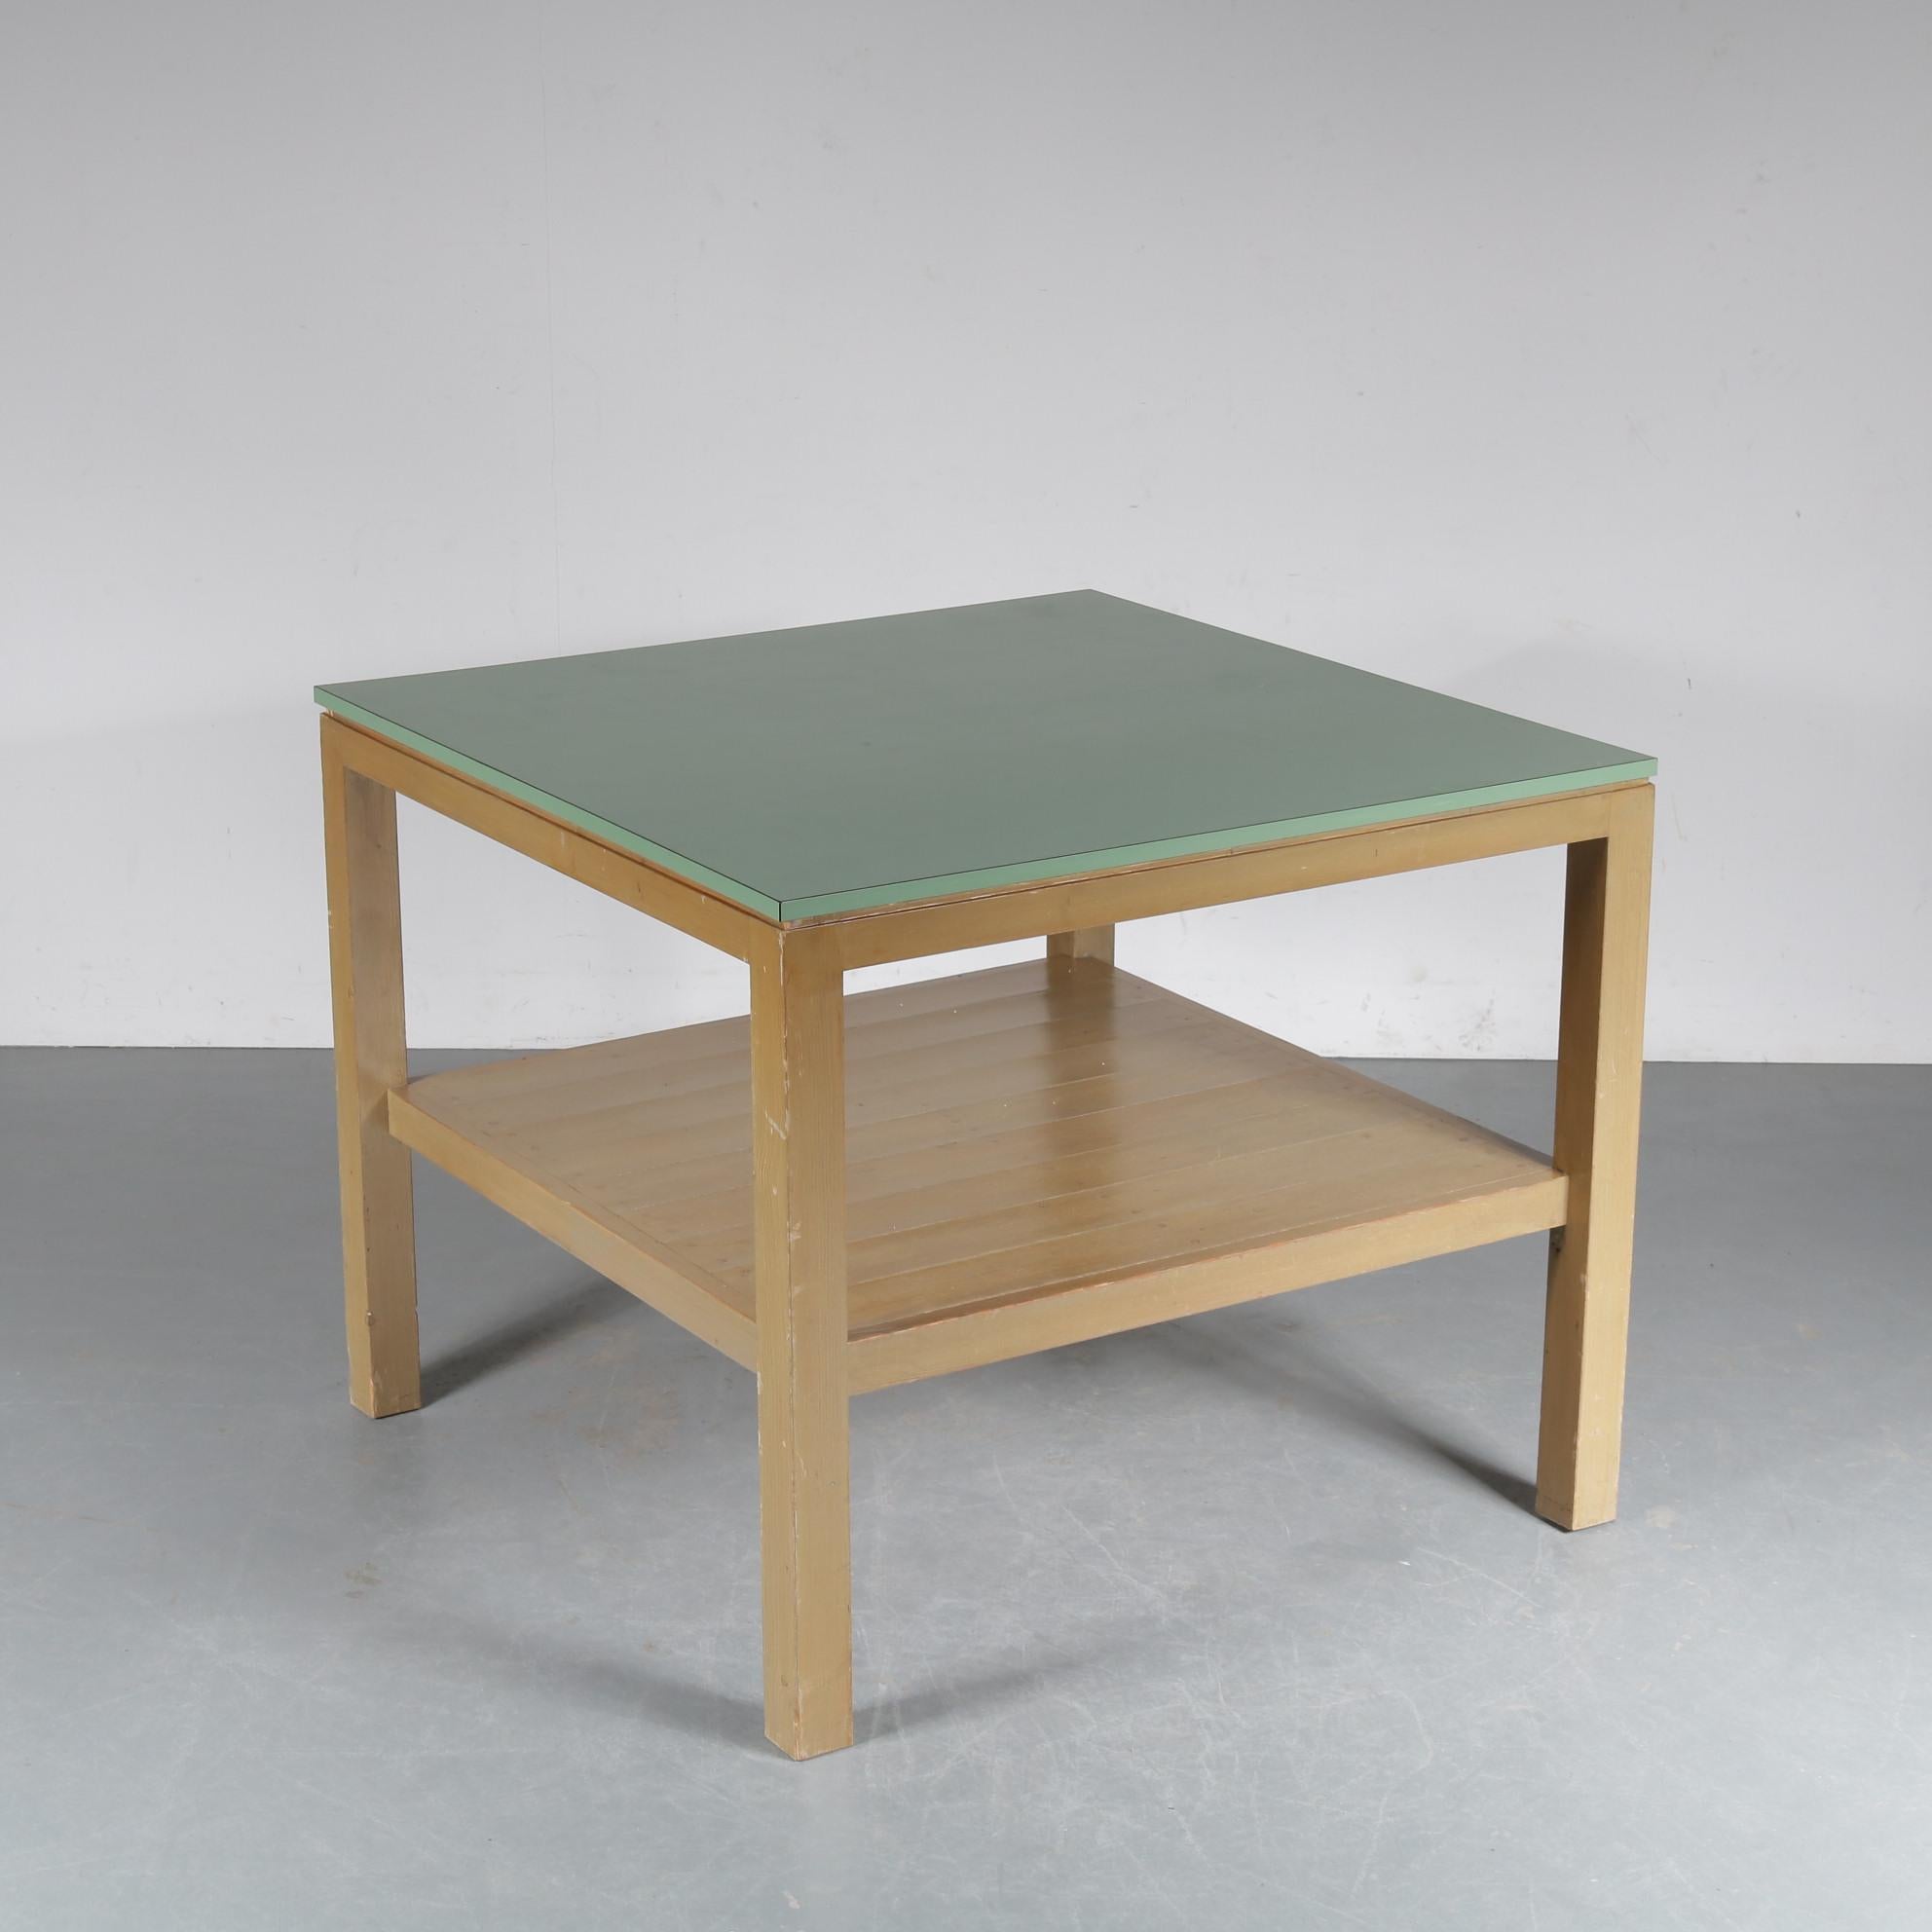 Rare Dom Hans van der Laan Working Table, Netherlands, 1970 For Sale 3